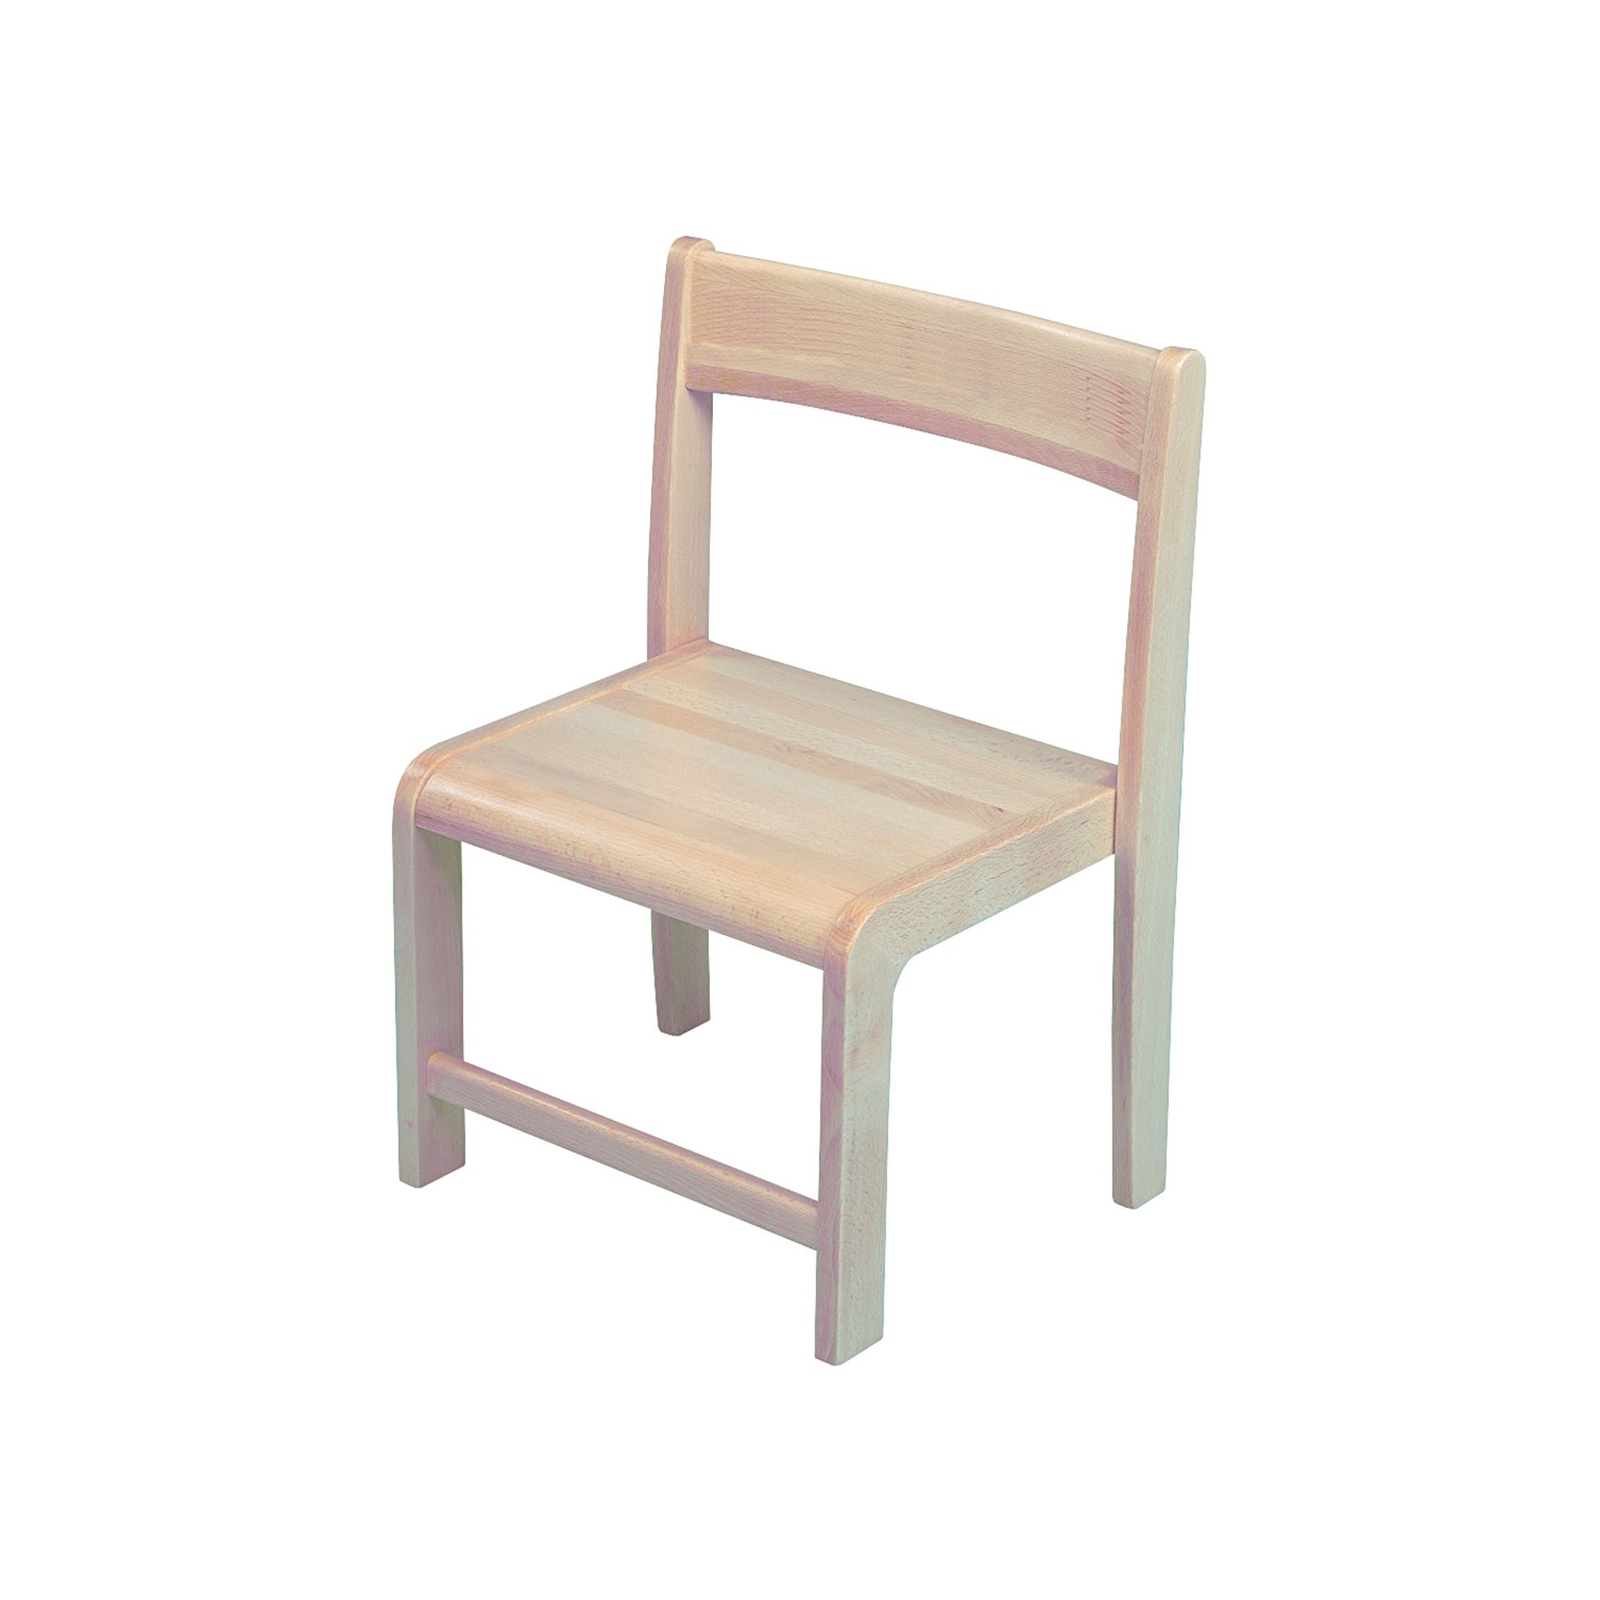 Galt Low Height Teacher Chair 320mm